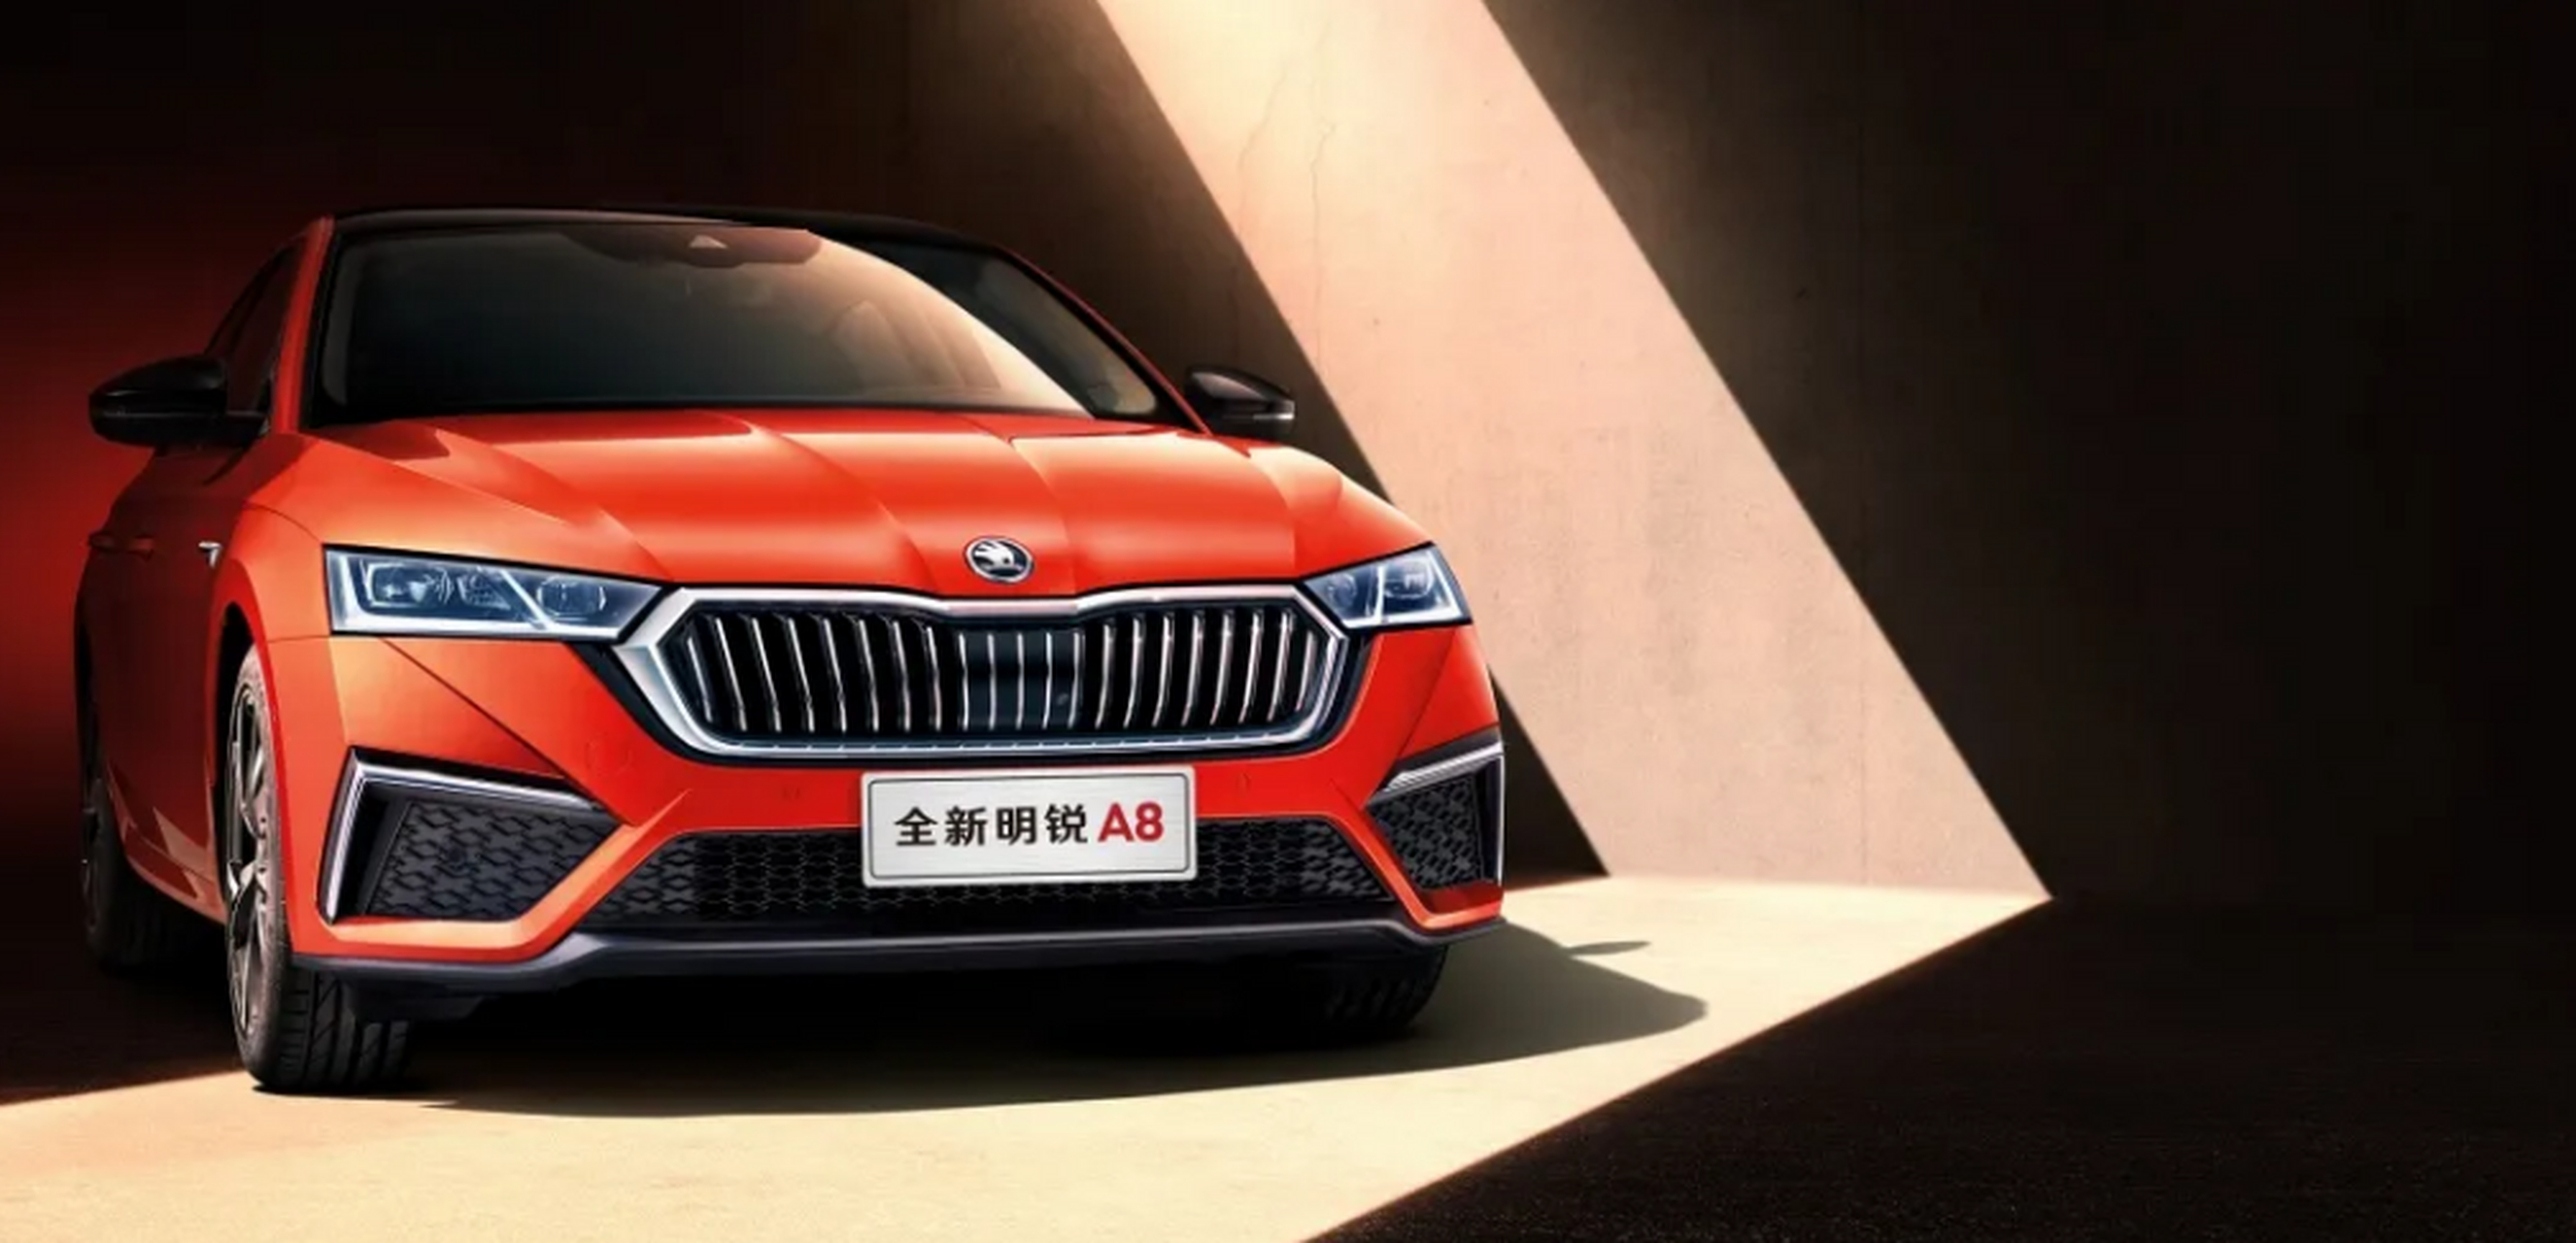 斯柯达全新明锐a8将在上海车展亮相,空间再次升级,相较上代车型车长